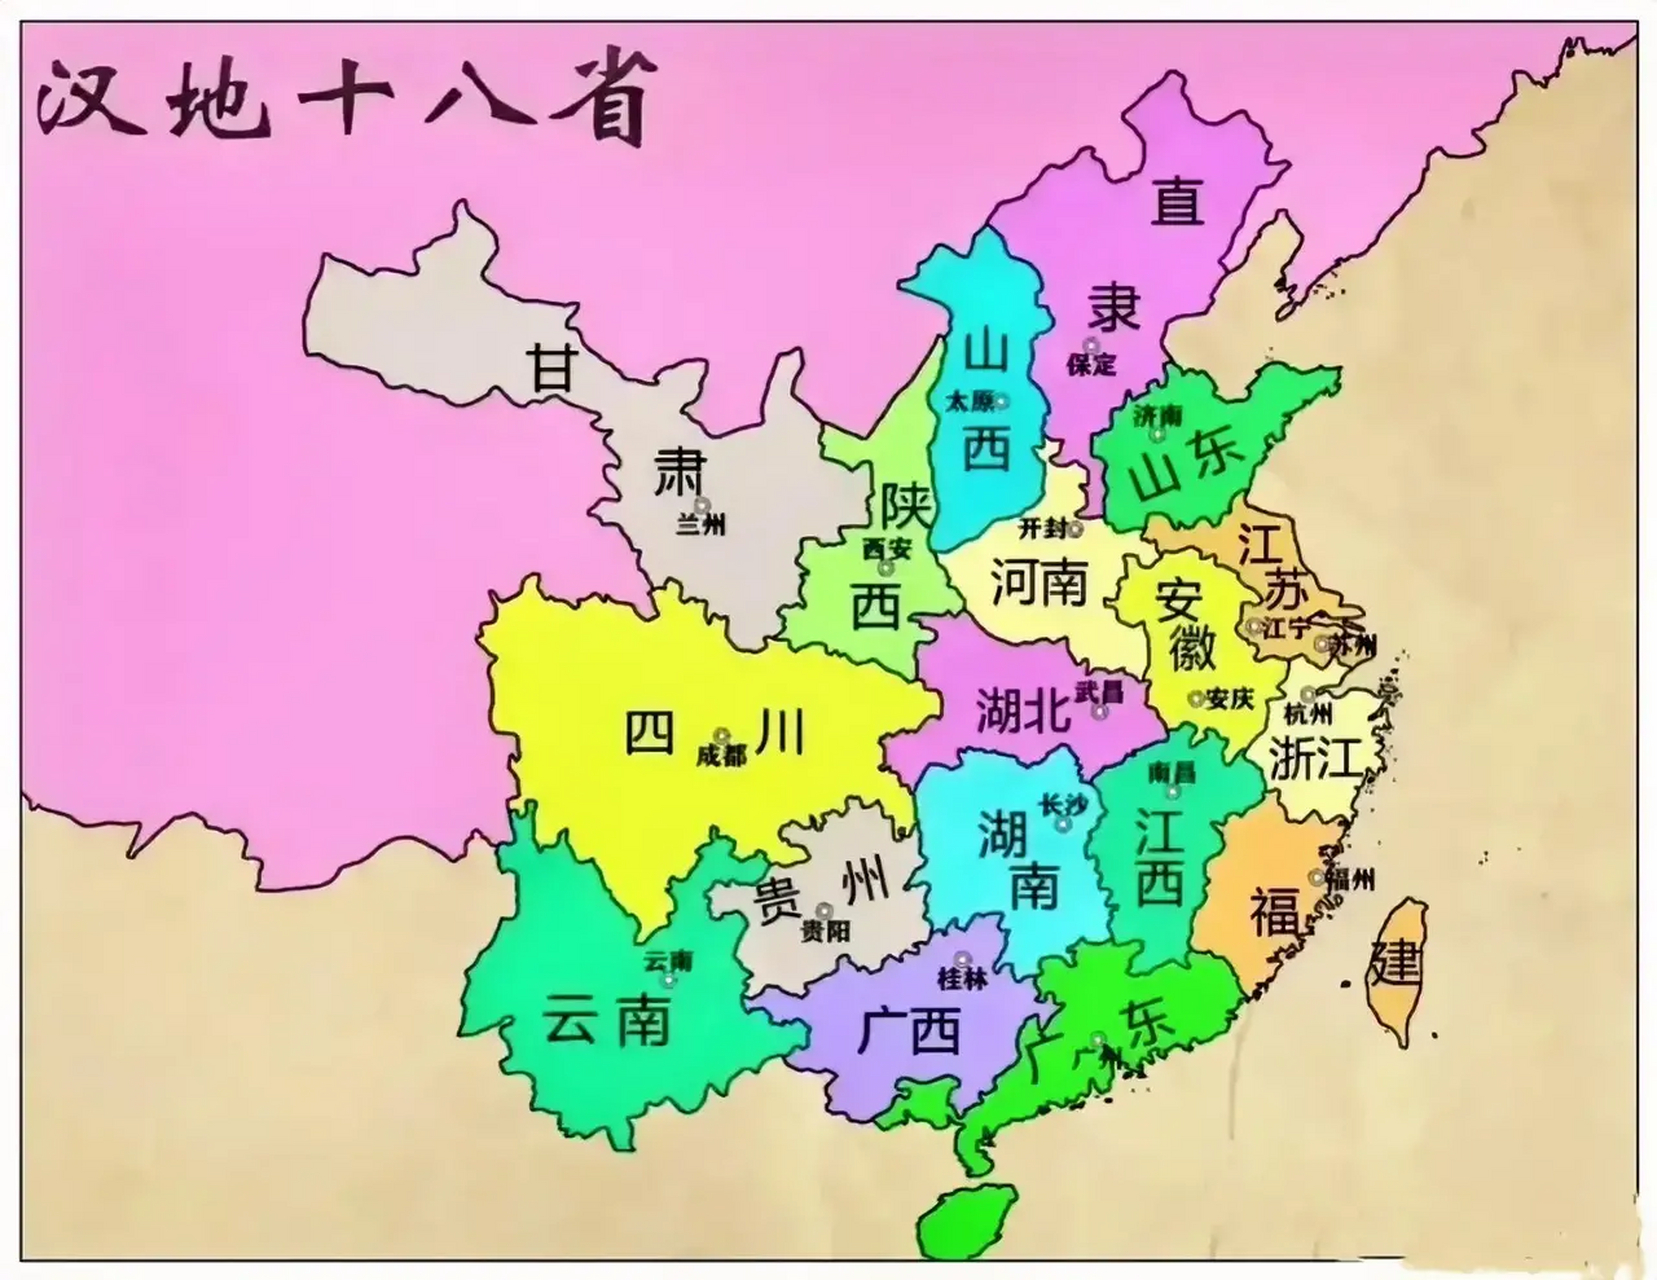 直隶省(包括北京,天津两市,河北长城南部地区和河南,山东的小部地区)